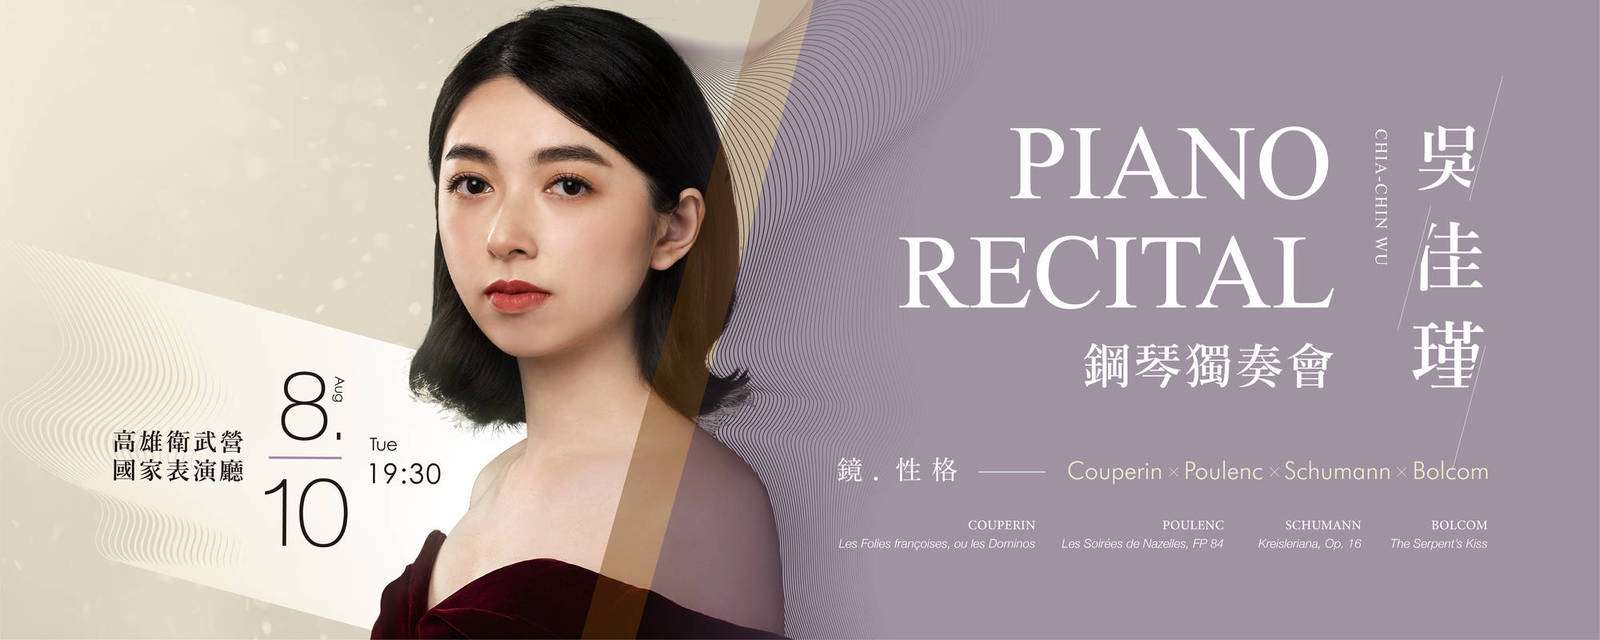 【節目異動公告】《鏡與性格—吳佳瑾鋼琴獨奏會》節目取消